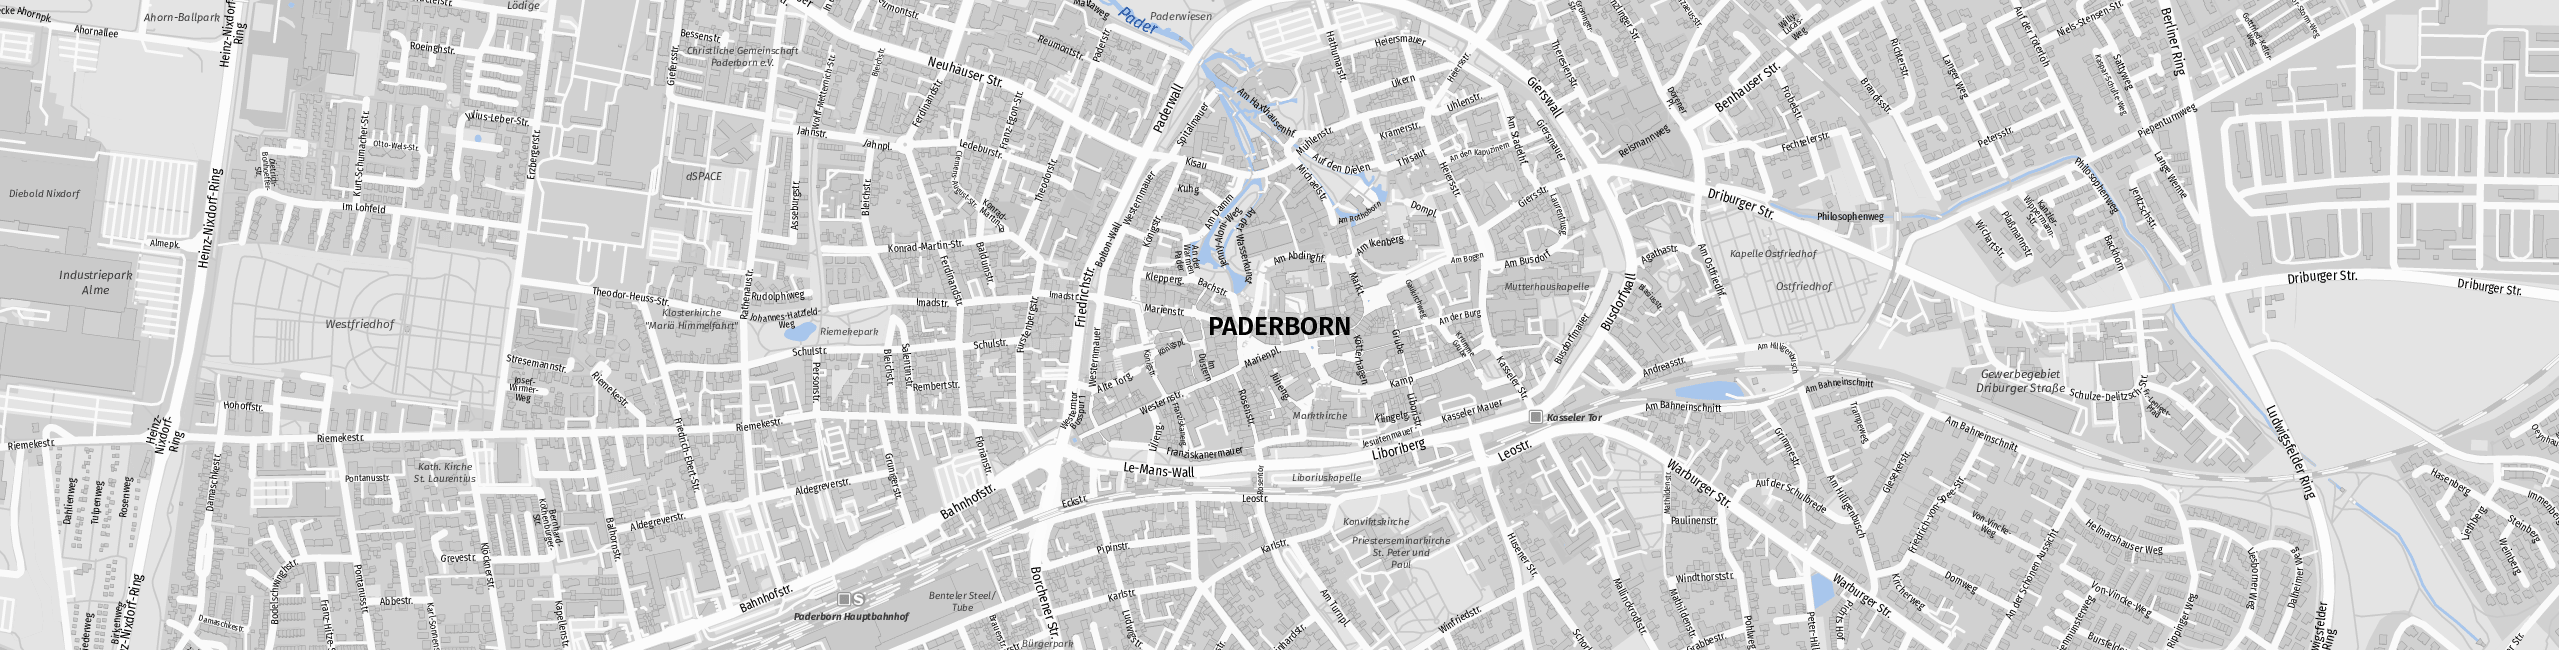 Stadtplan Paderborn zum Downloaden.